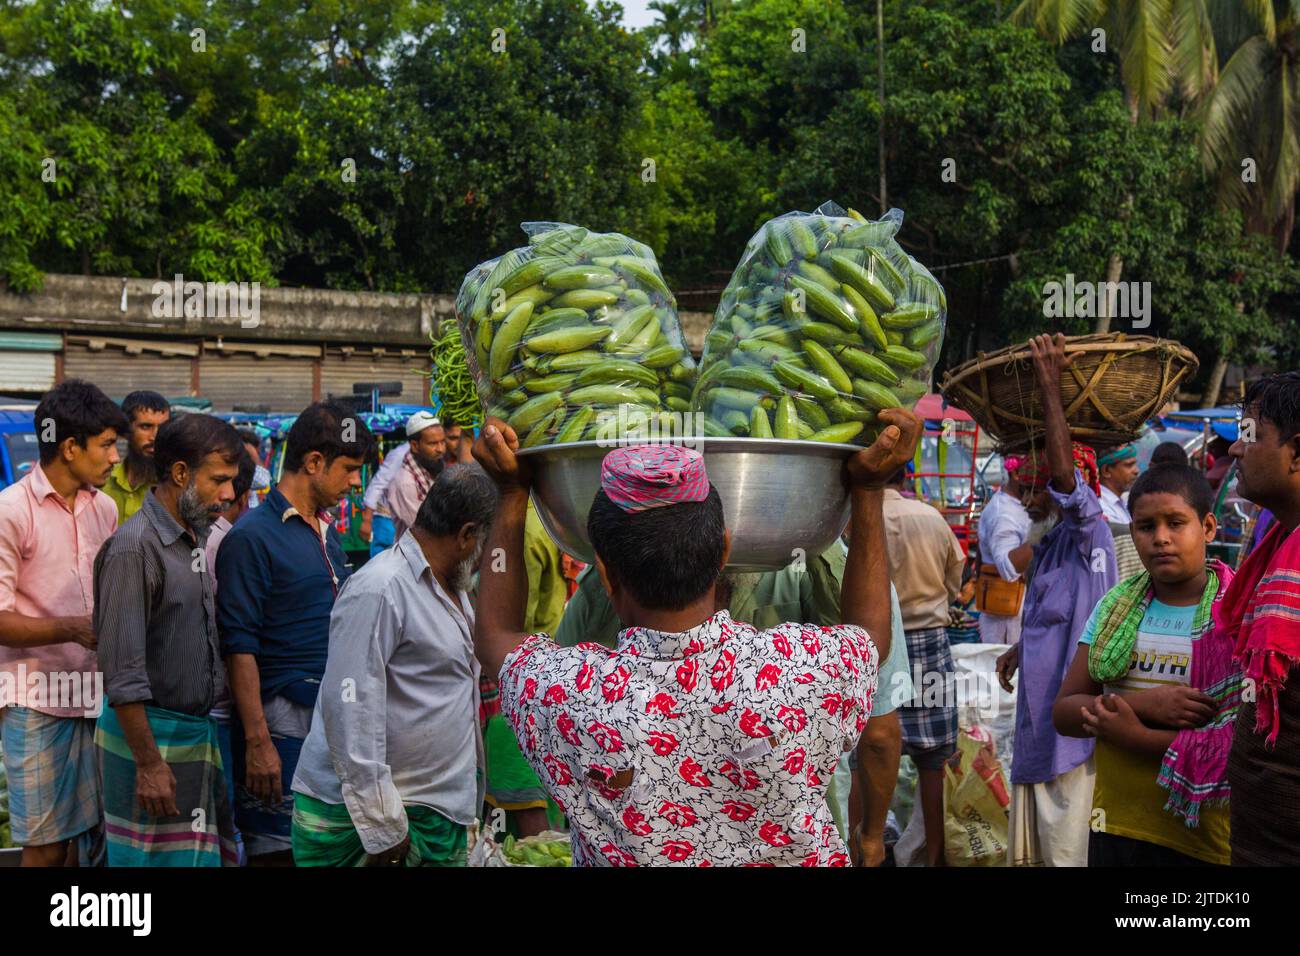 Las hortalizas son una de las principales fuentes de ingresos para los agricultores de Bangladesh. Anteriormente era sólo para el consumo de los hogares, pero ahora se convierten en cultivos comerciales. Foto de stock